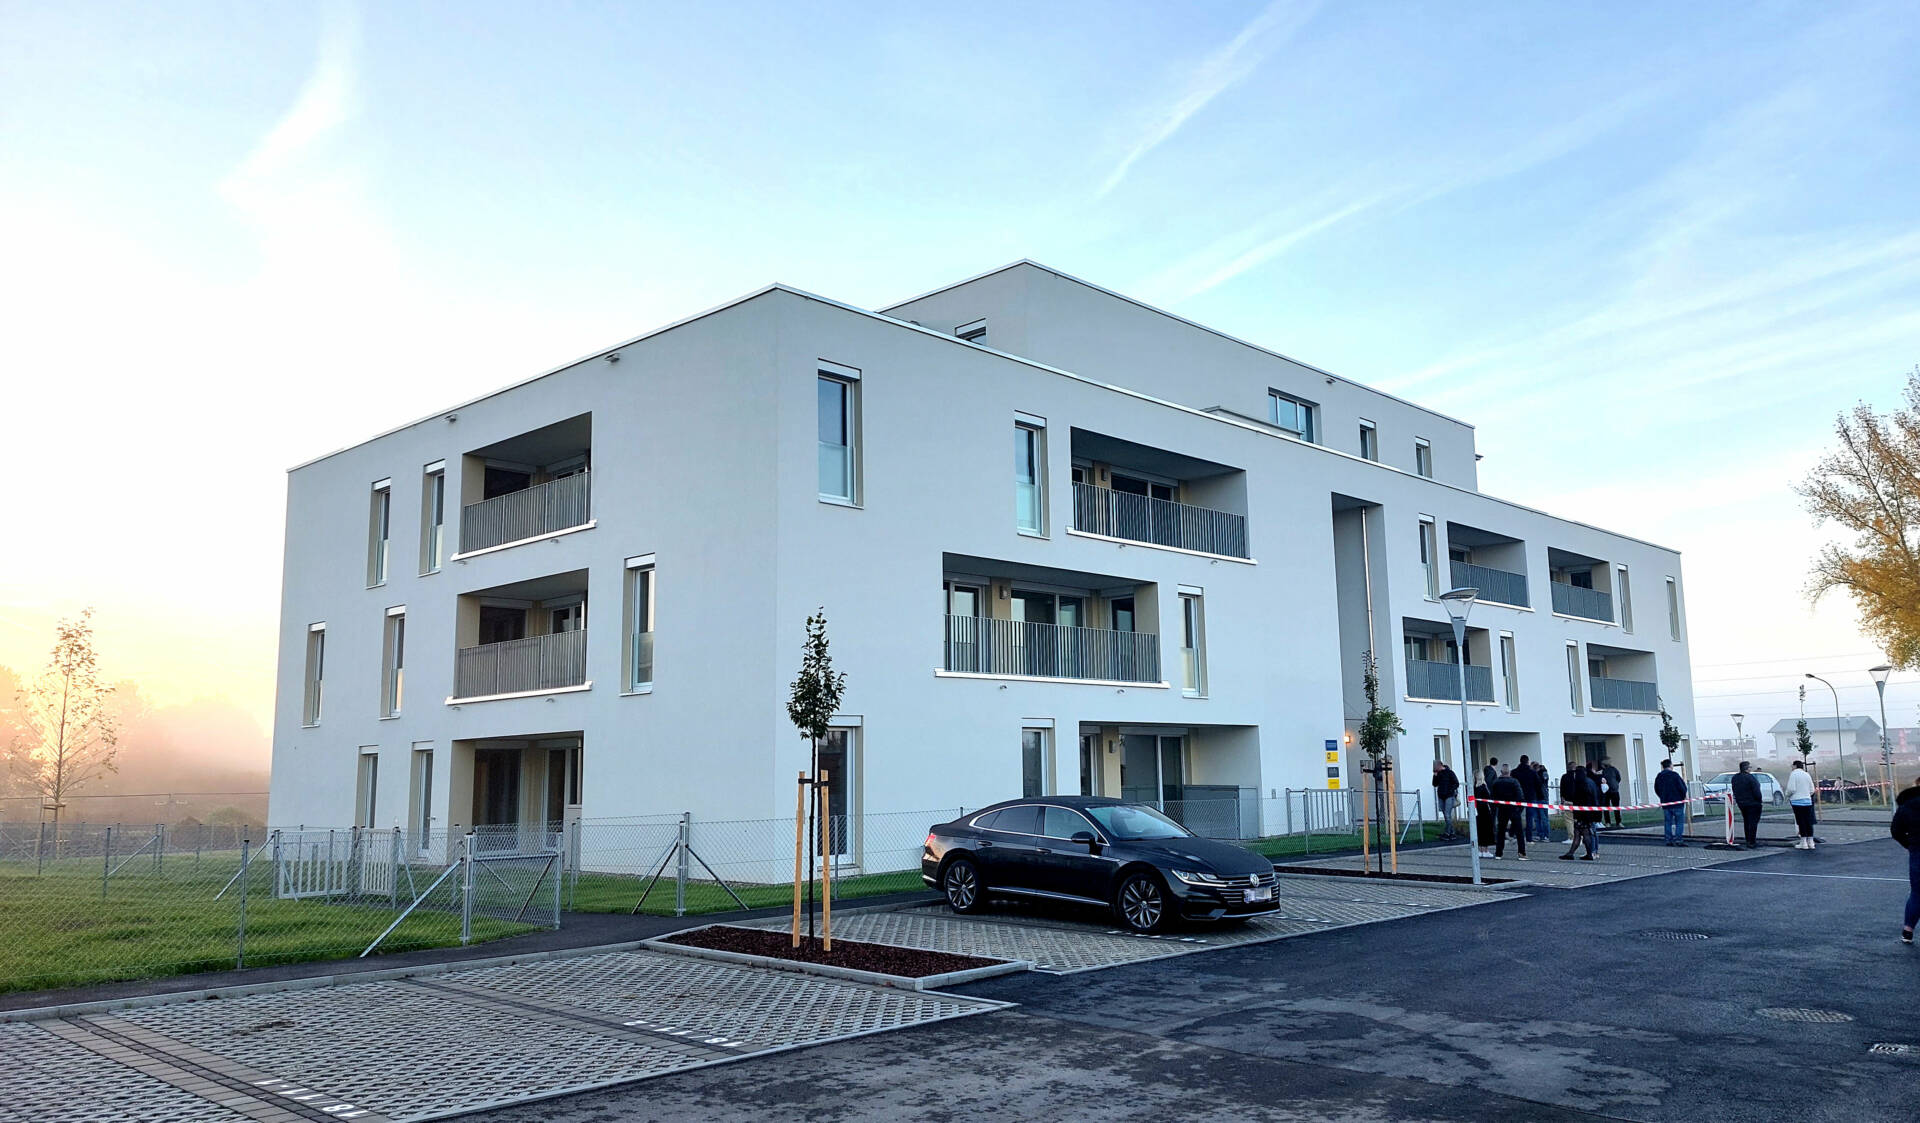 Neubau einer Wohnhausanlage, Bauteil 6 in Kirchberg am Wagram durch die Bauunternehmen Schubrig Krems und Lang